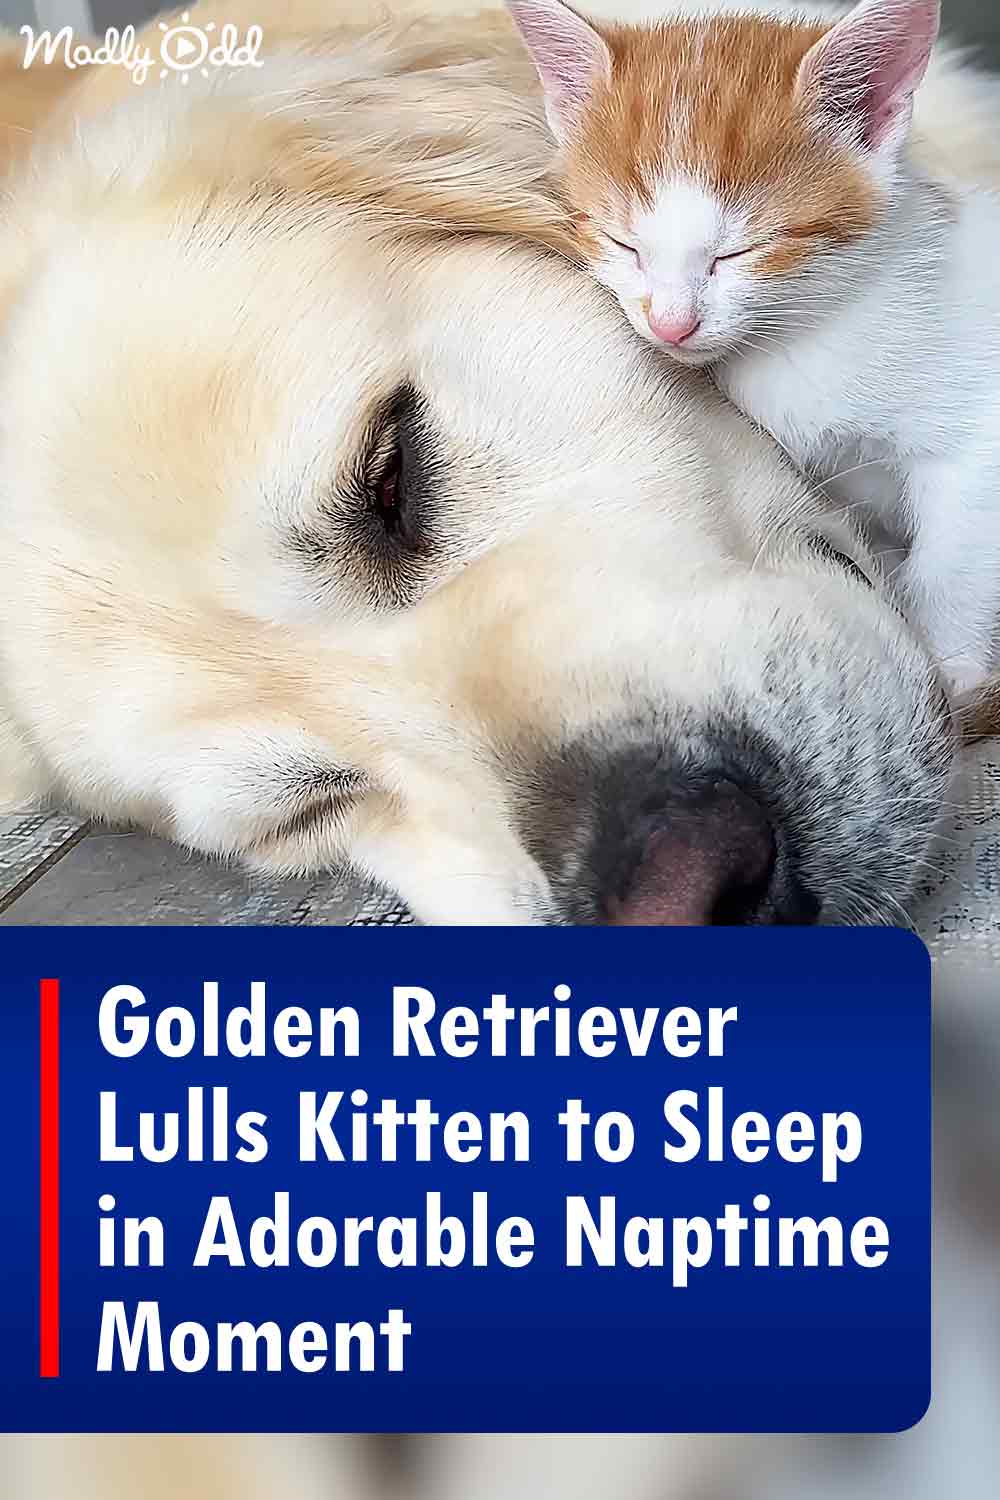 Golden Retriever Lulls Kitten to Sleep in Adorable Naptime Moment